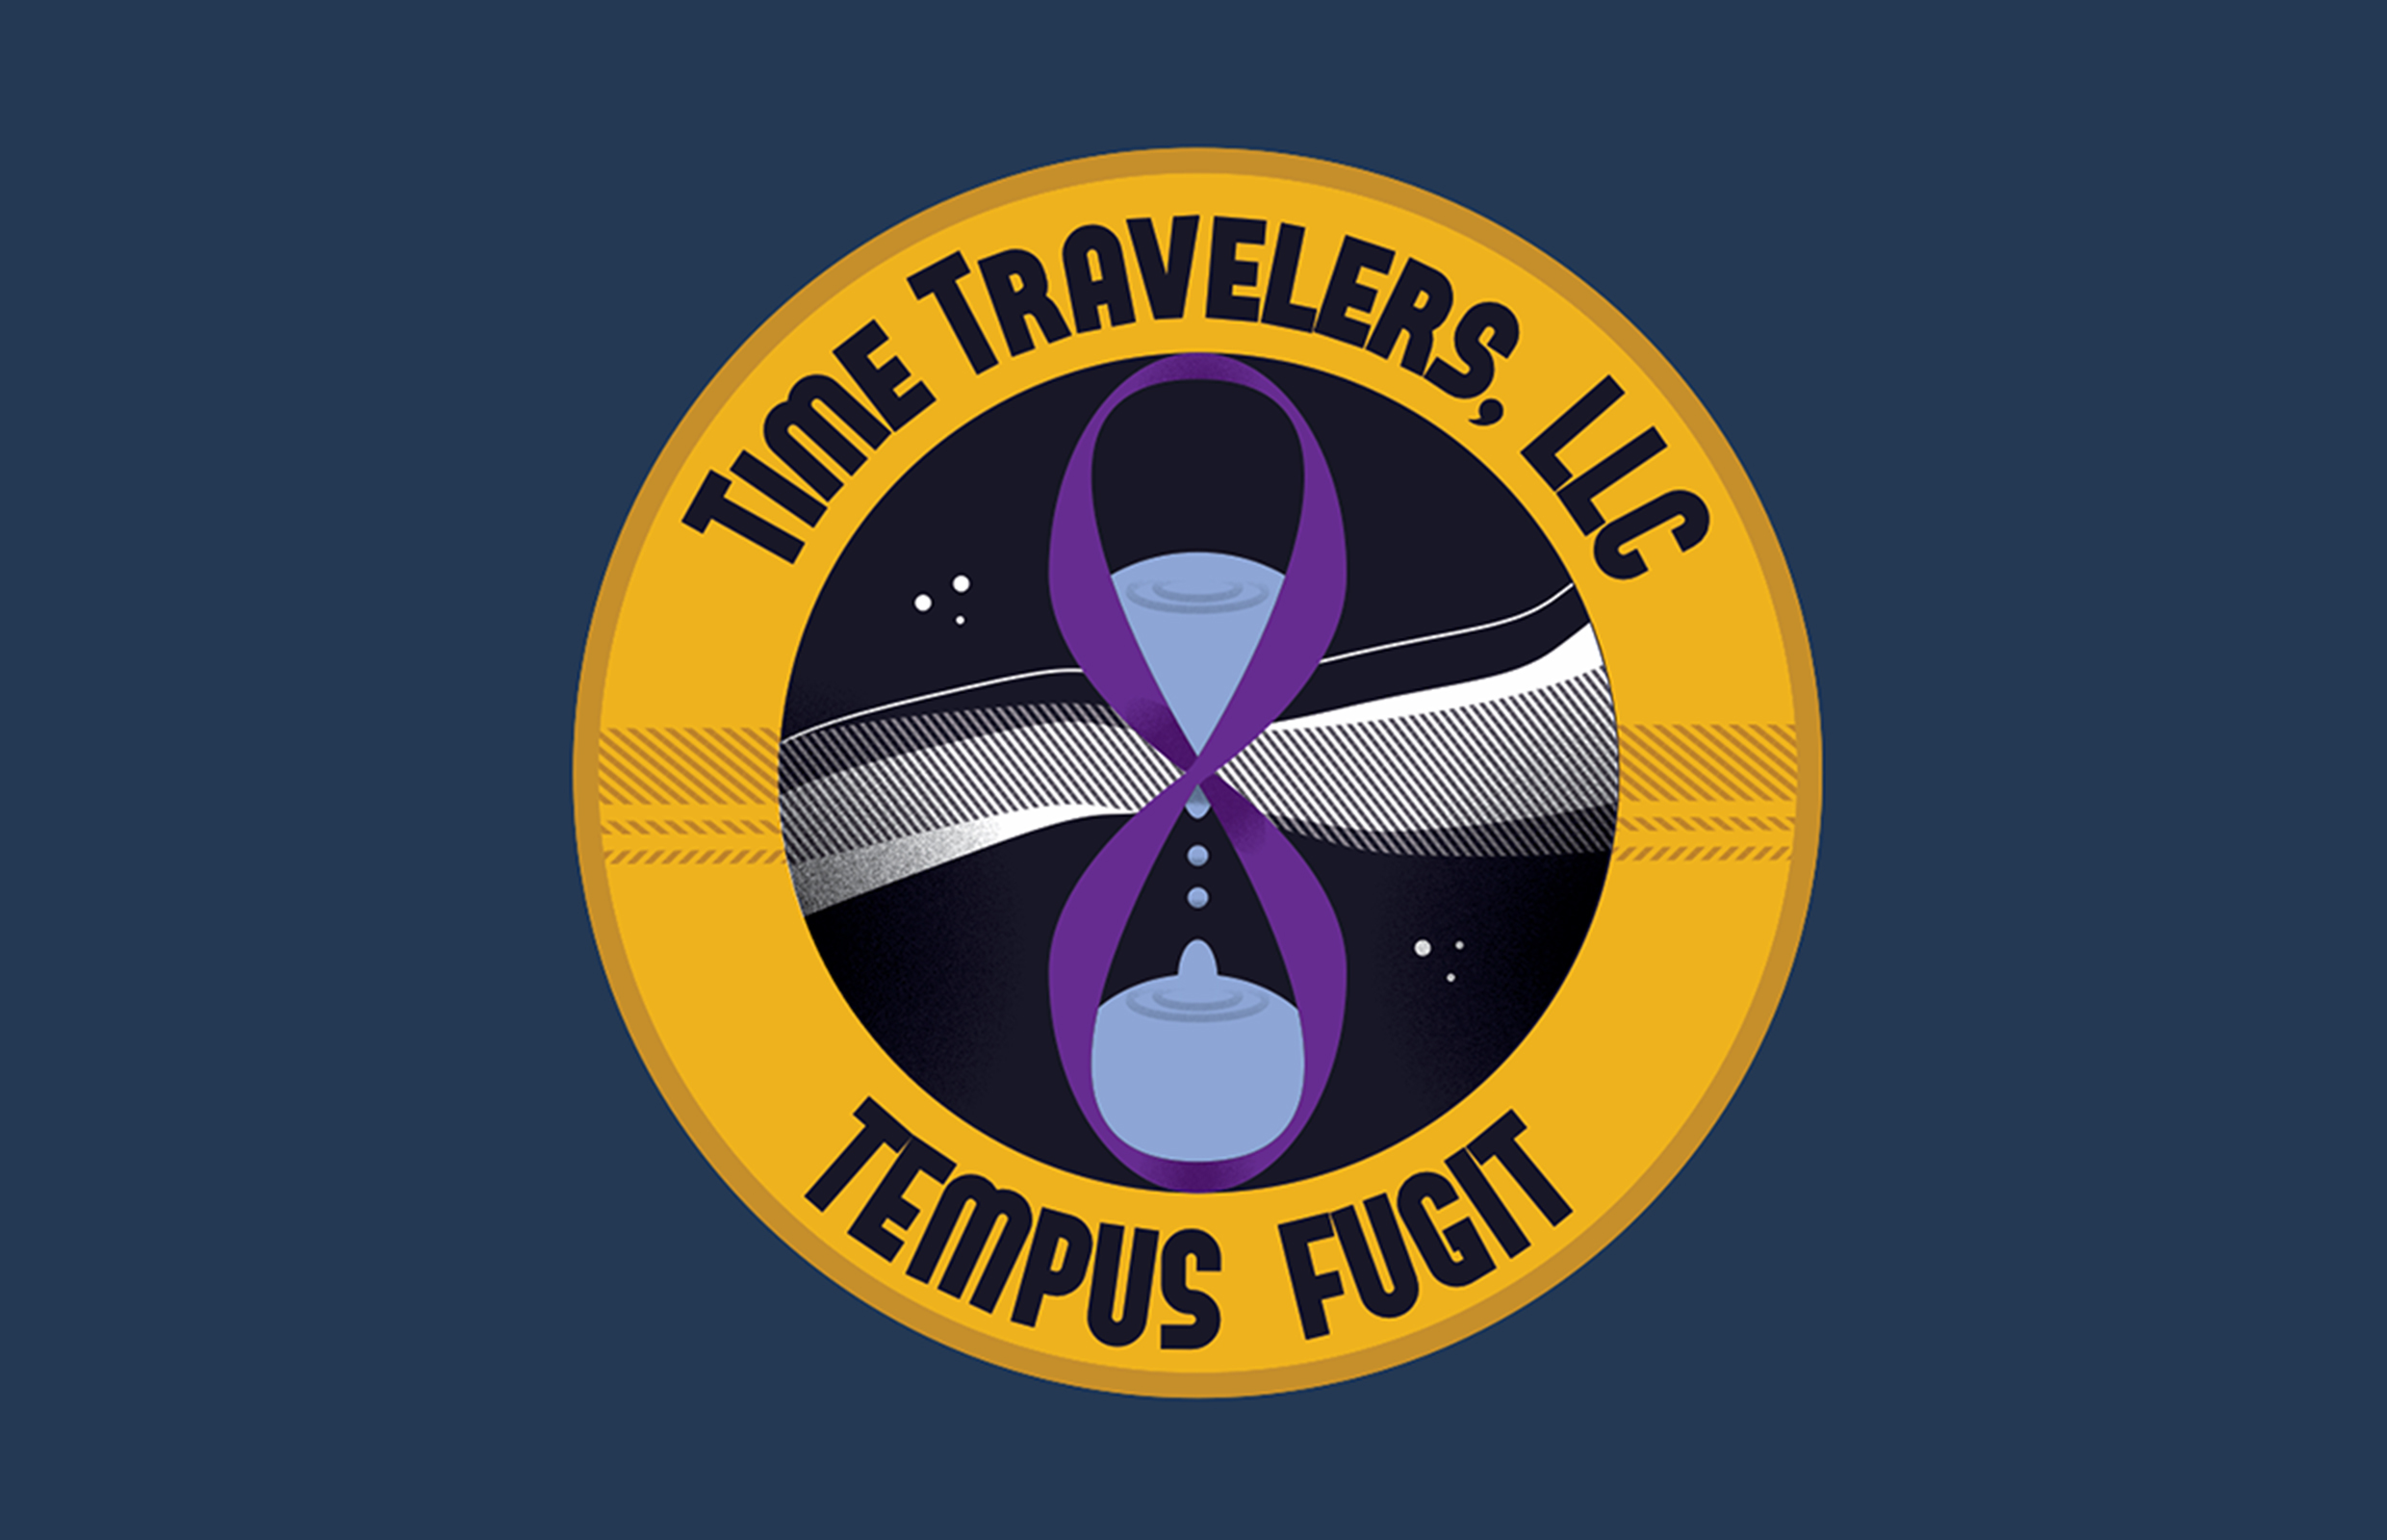 Time Traveleres LLC